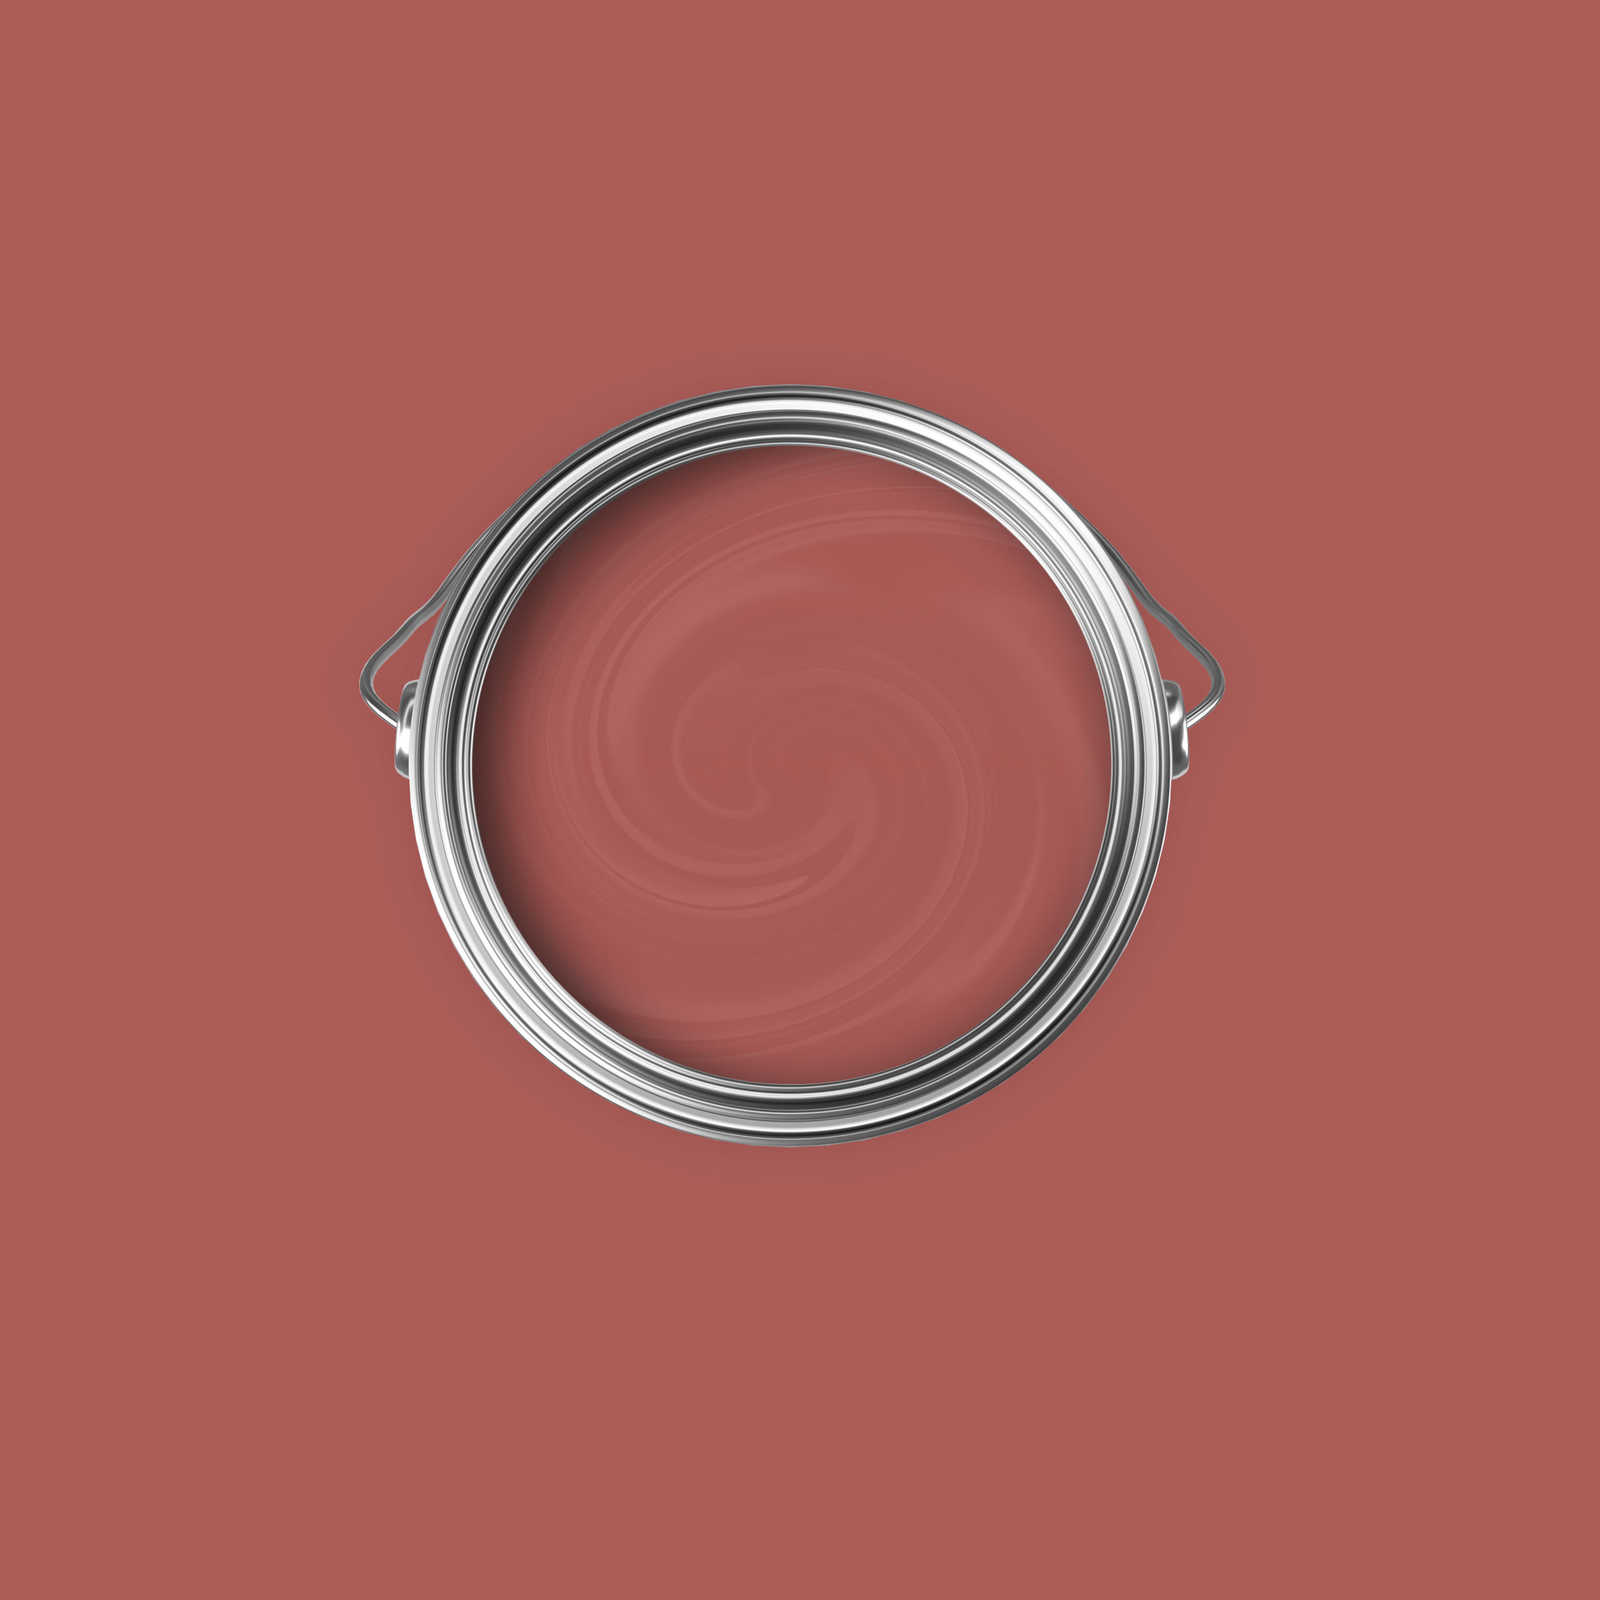             Premium Wandfarbe harmonisches Dunkelrosa »Luxury Lipstick« NW1005 – 2,5 Liter
        